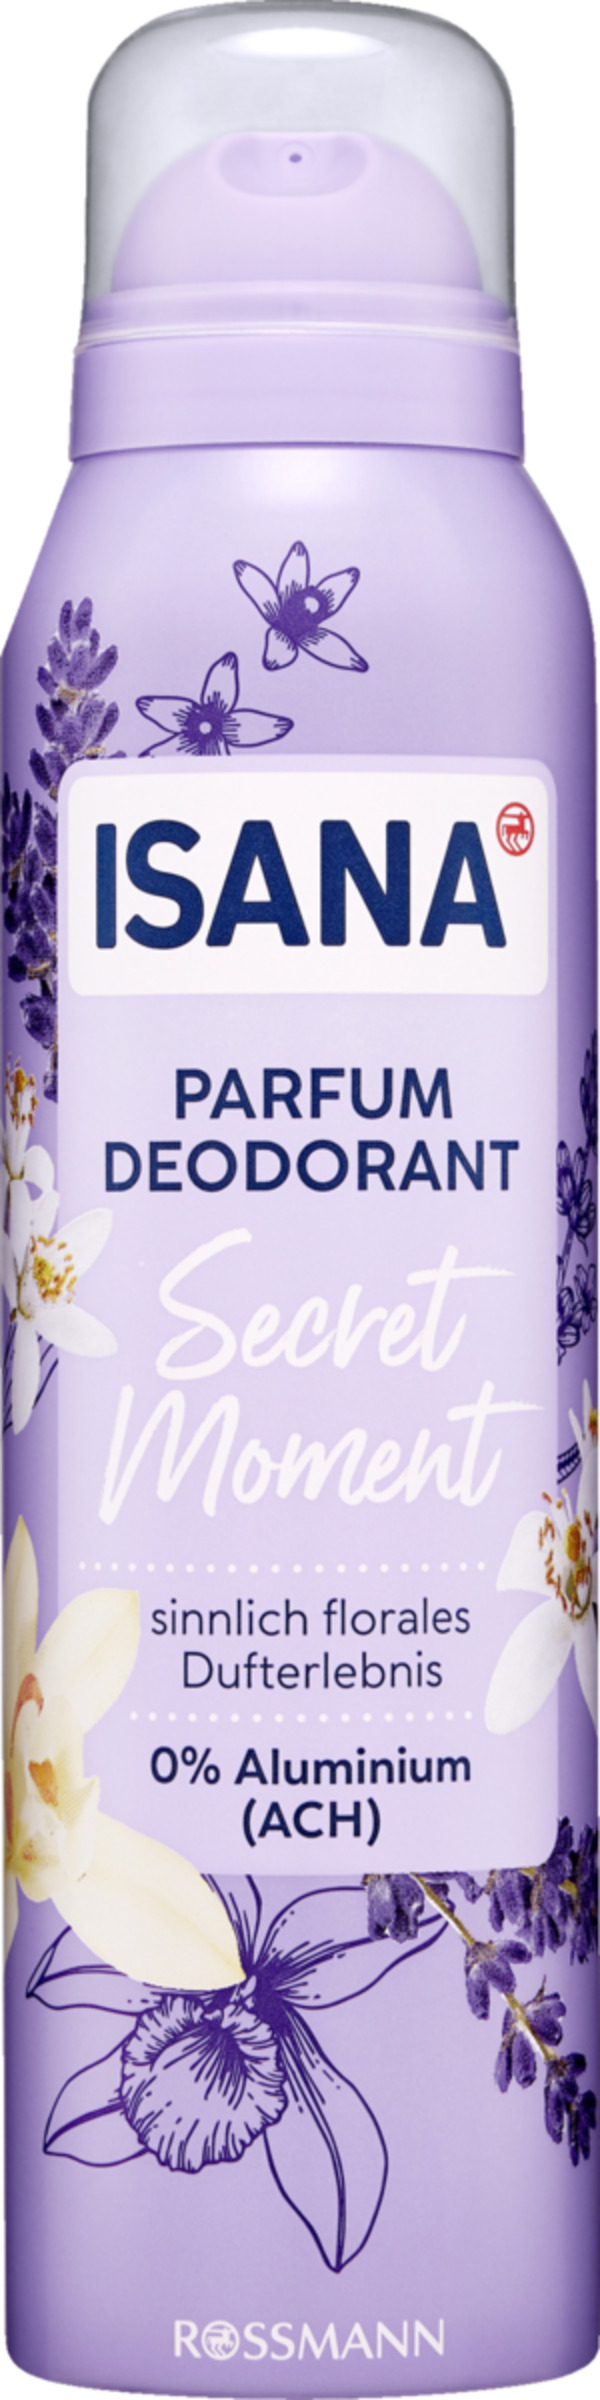 Bild 1 von ISANA Parfum Deodorant Secret Moment